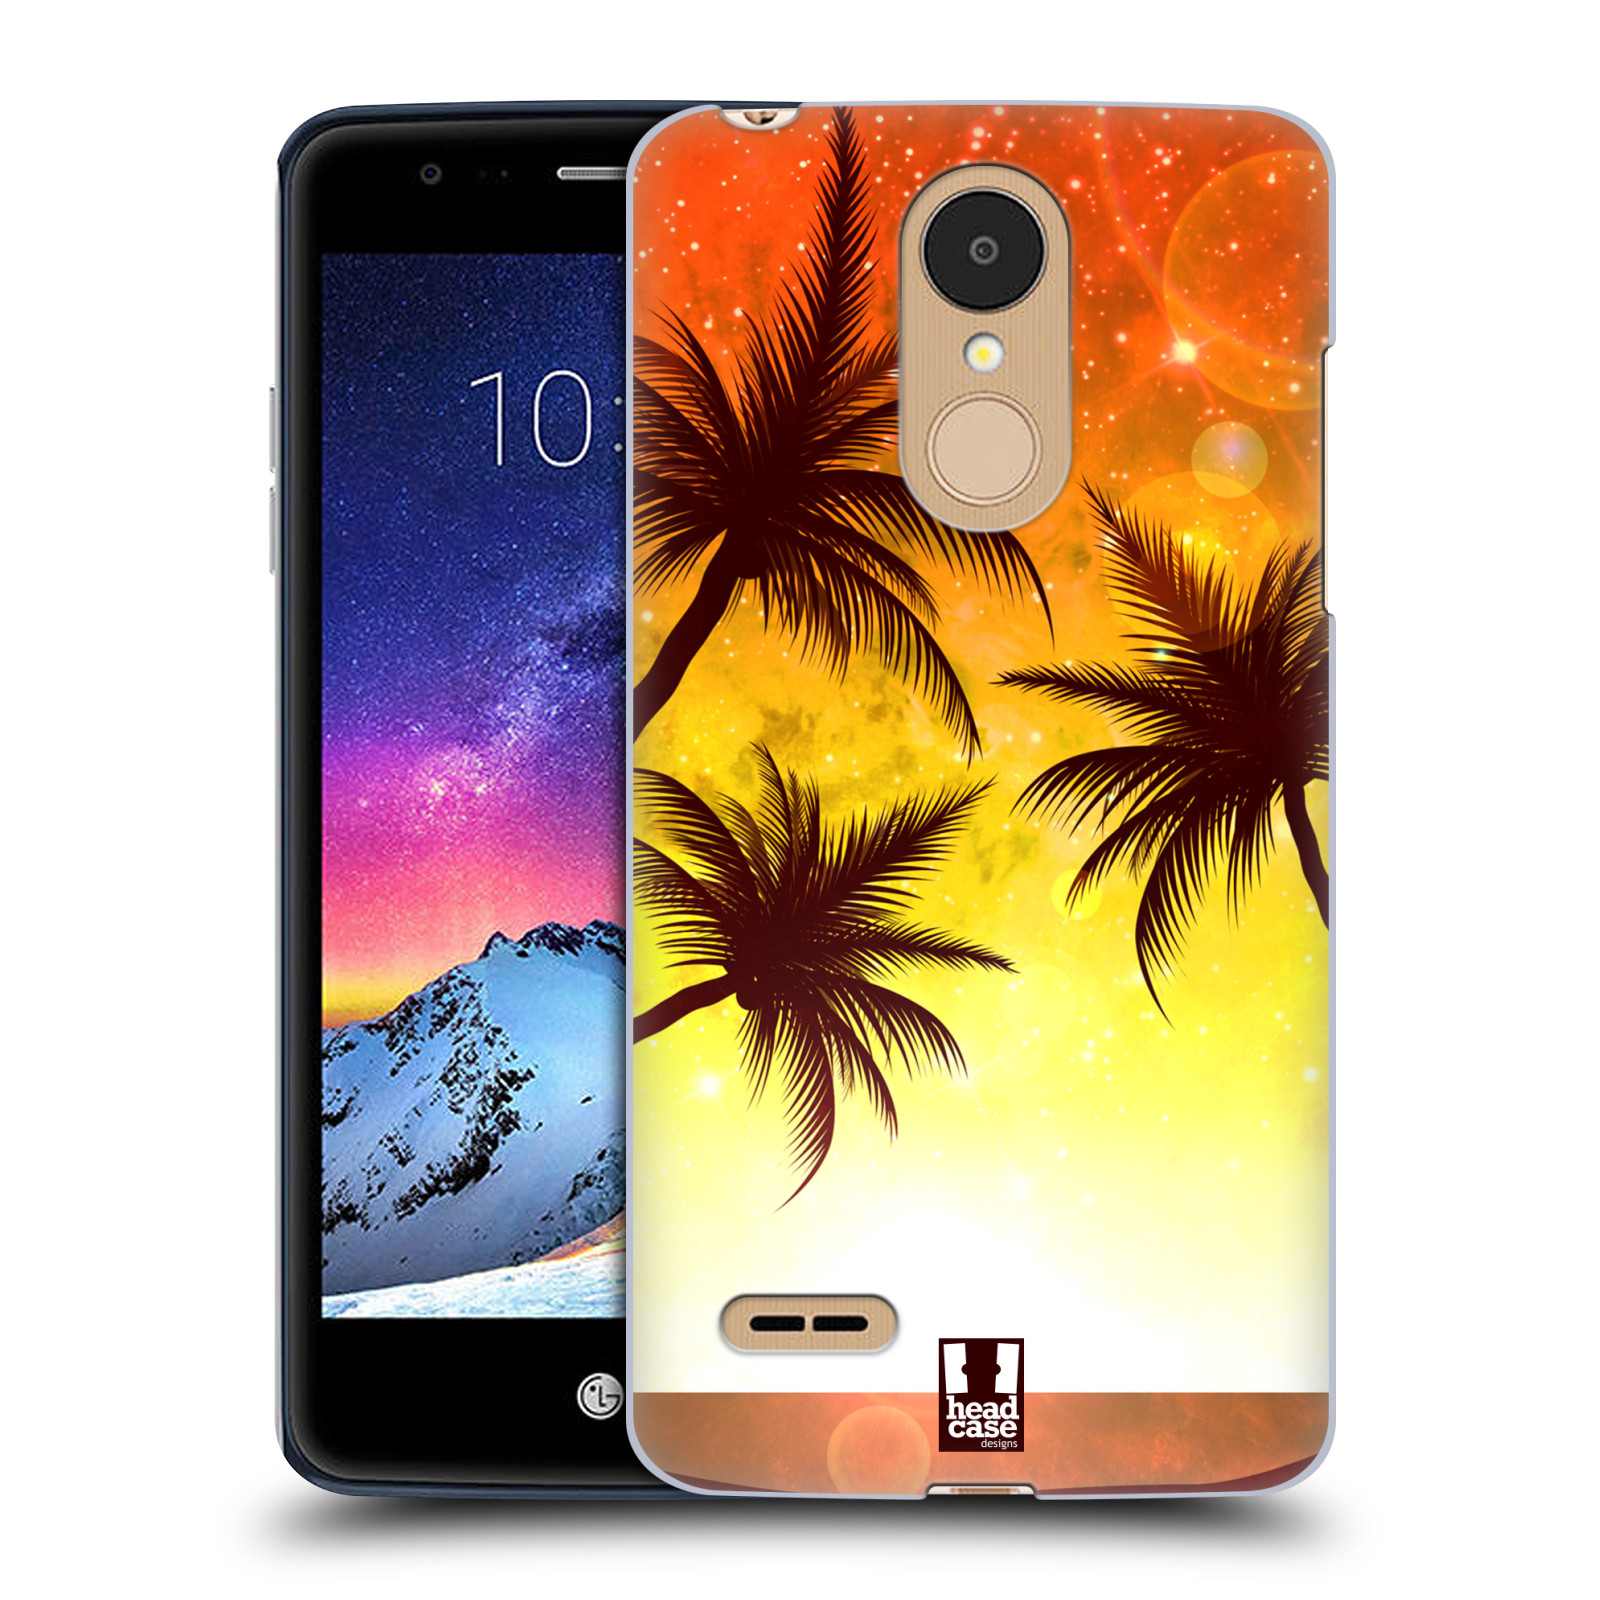 HEAD CASE plastový obal na mobil LG K9 / K8 2018 vzor Kreslený motiv silueta moře a palmy ORANŽOVÁ